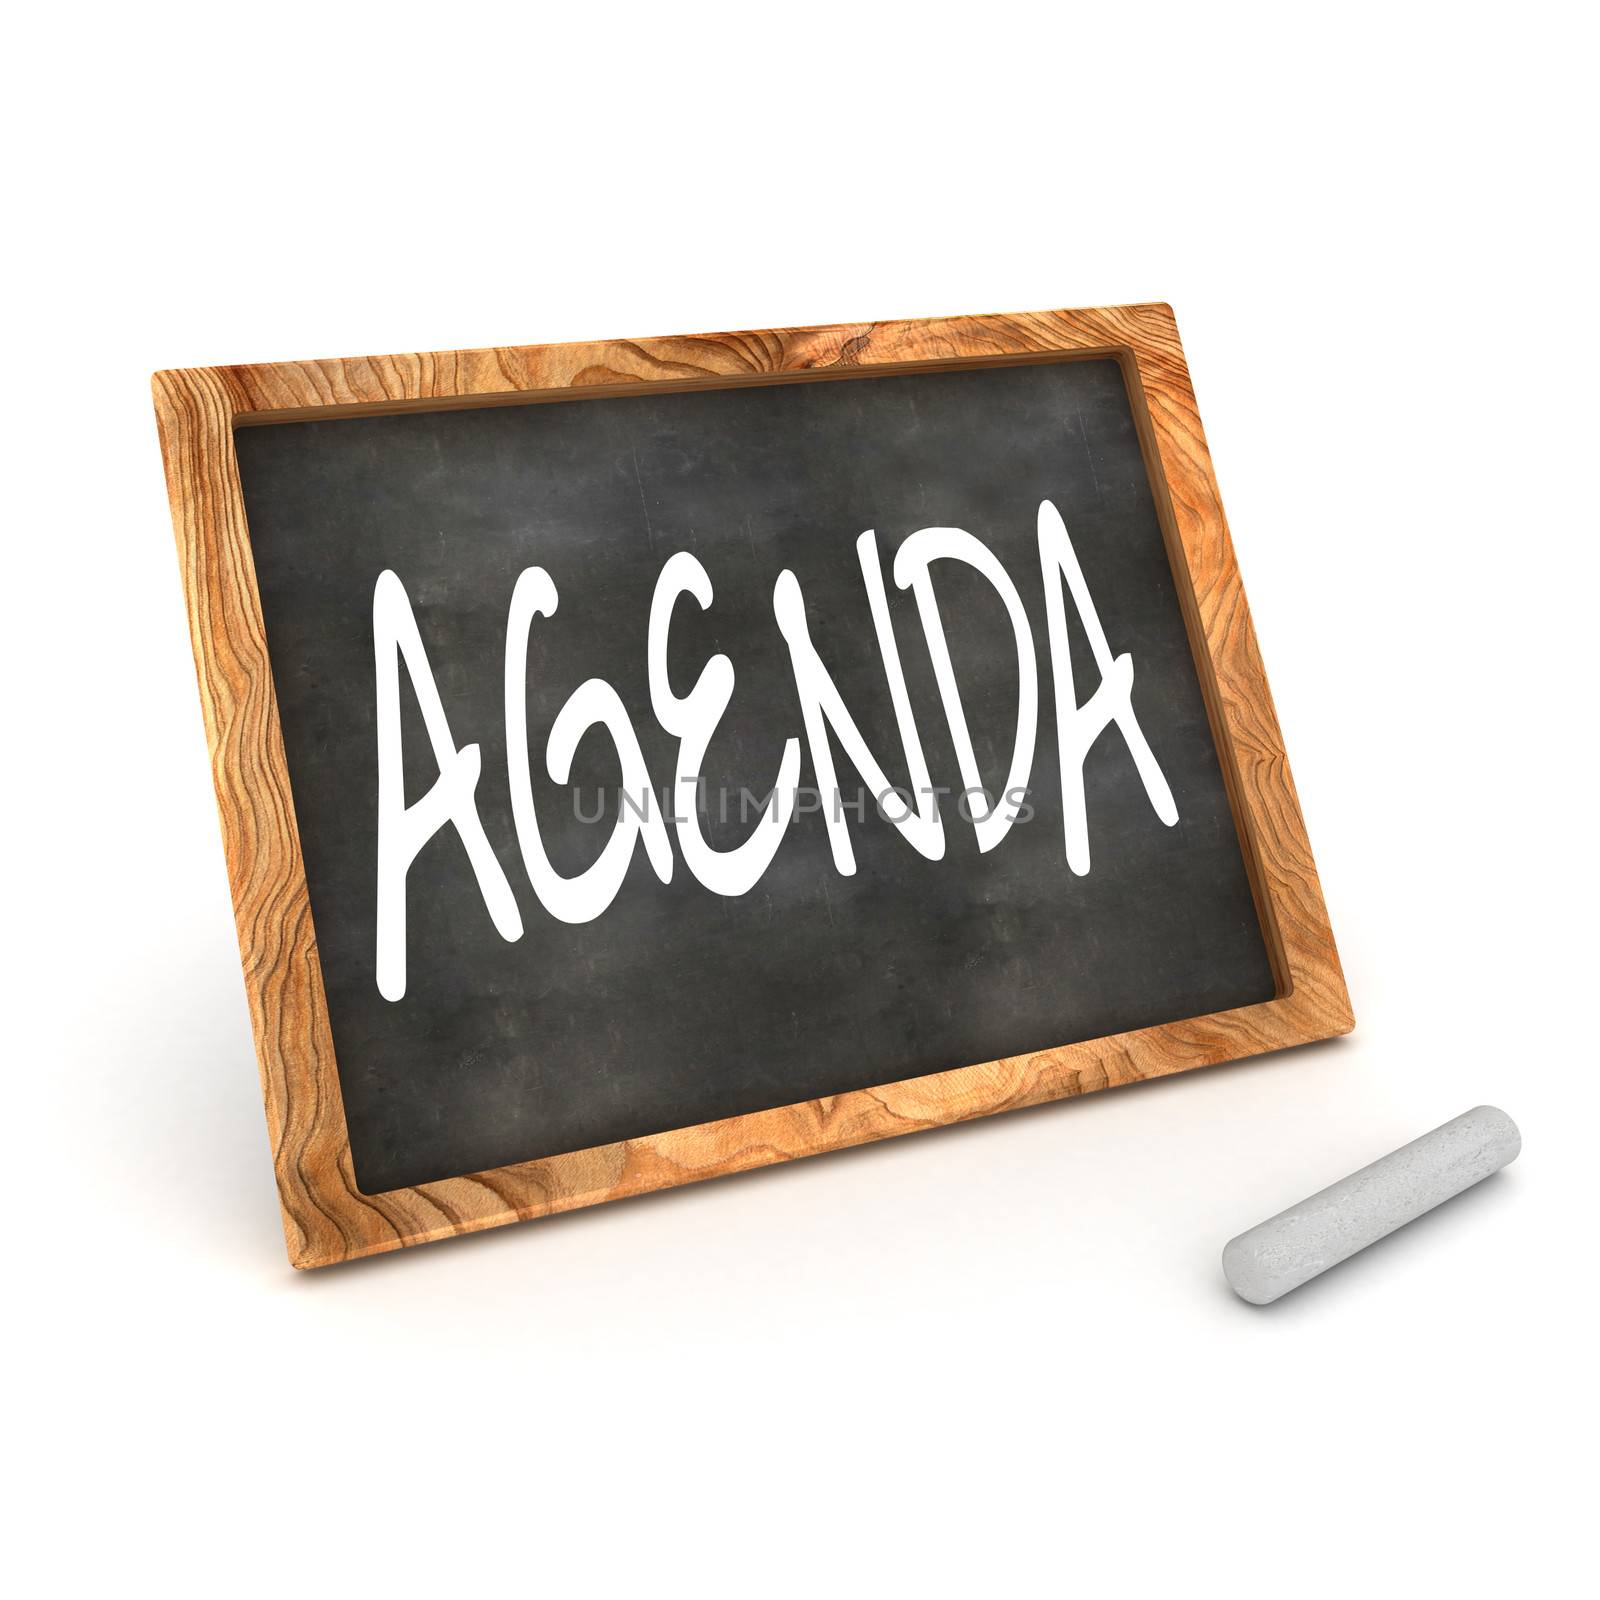 Blackboard Agenda by head-off